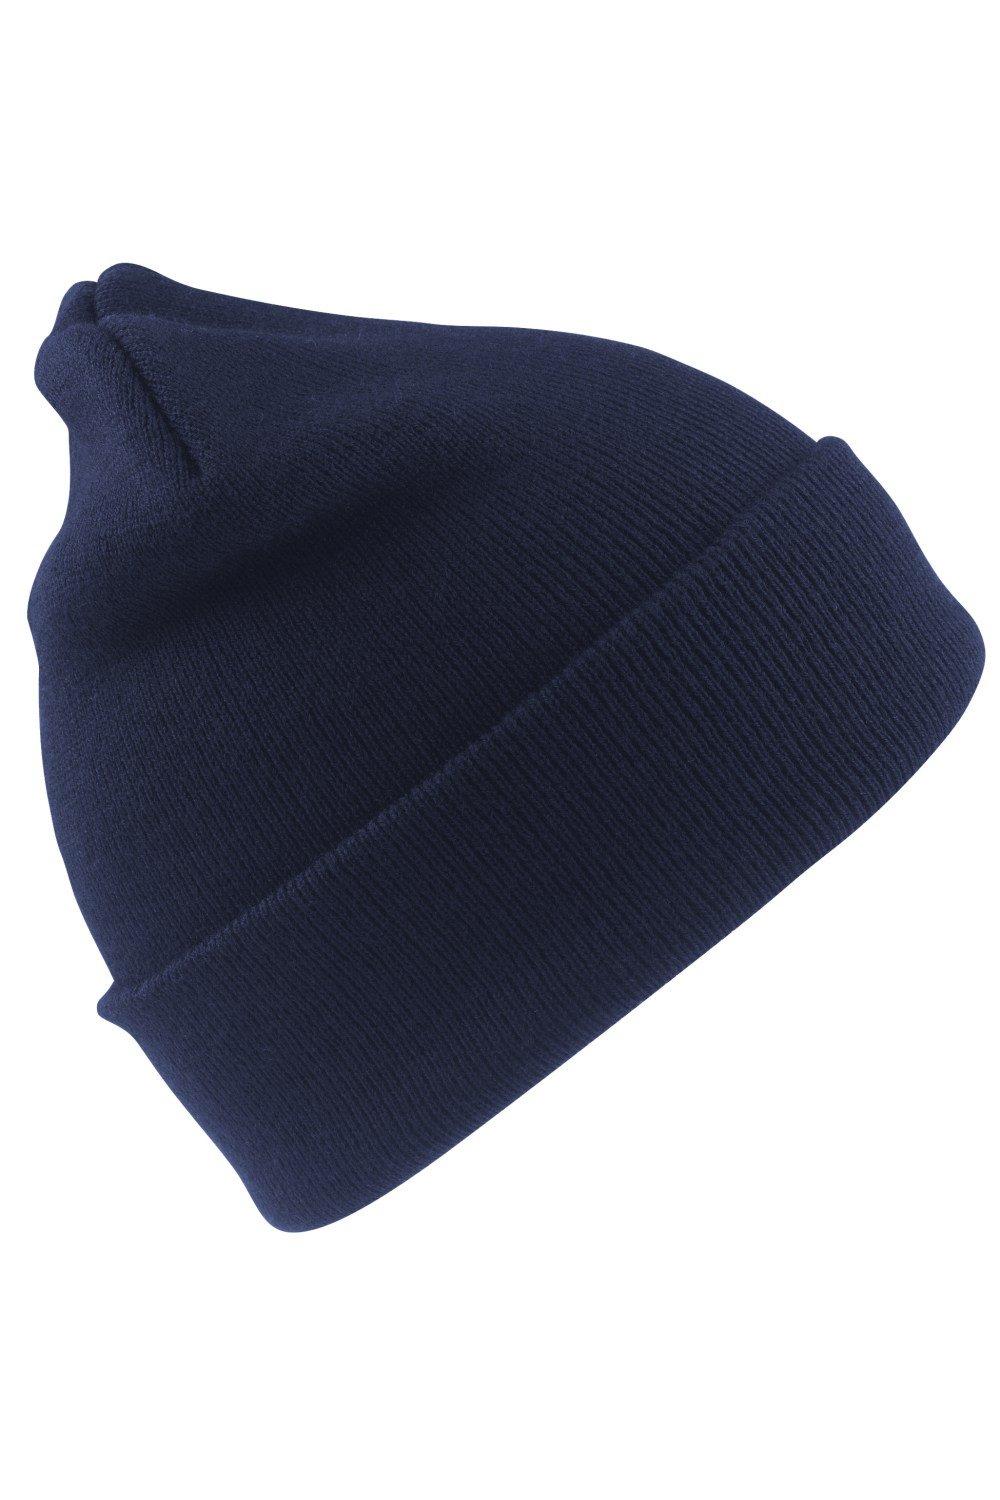 Шерстяная термолыжная/зимняя шапка с утеплителем Thinsulate 3M Result, темно-синий пряжа семеновская пряжа a elita 51 брусничный 5 шт по 100 г